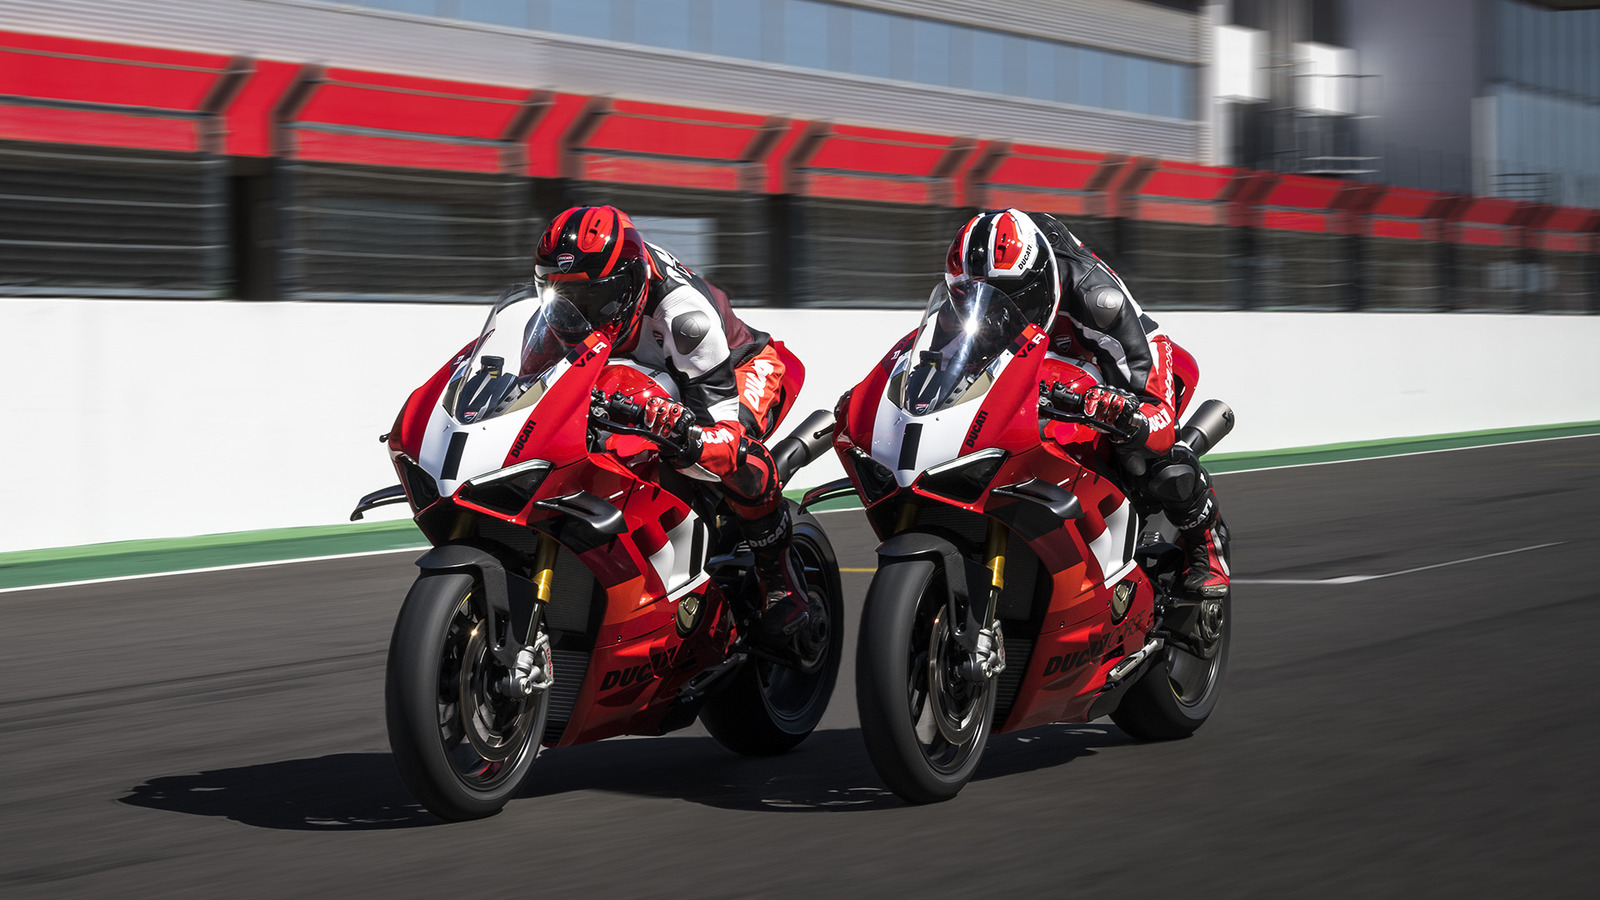 8 de las motocicletas Ducati más rápidas jamás construidas, clasificadas por velocidad máxima